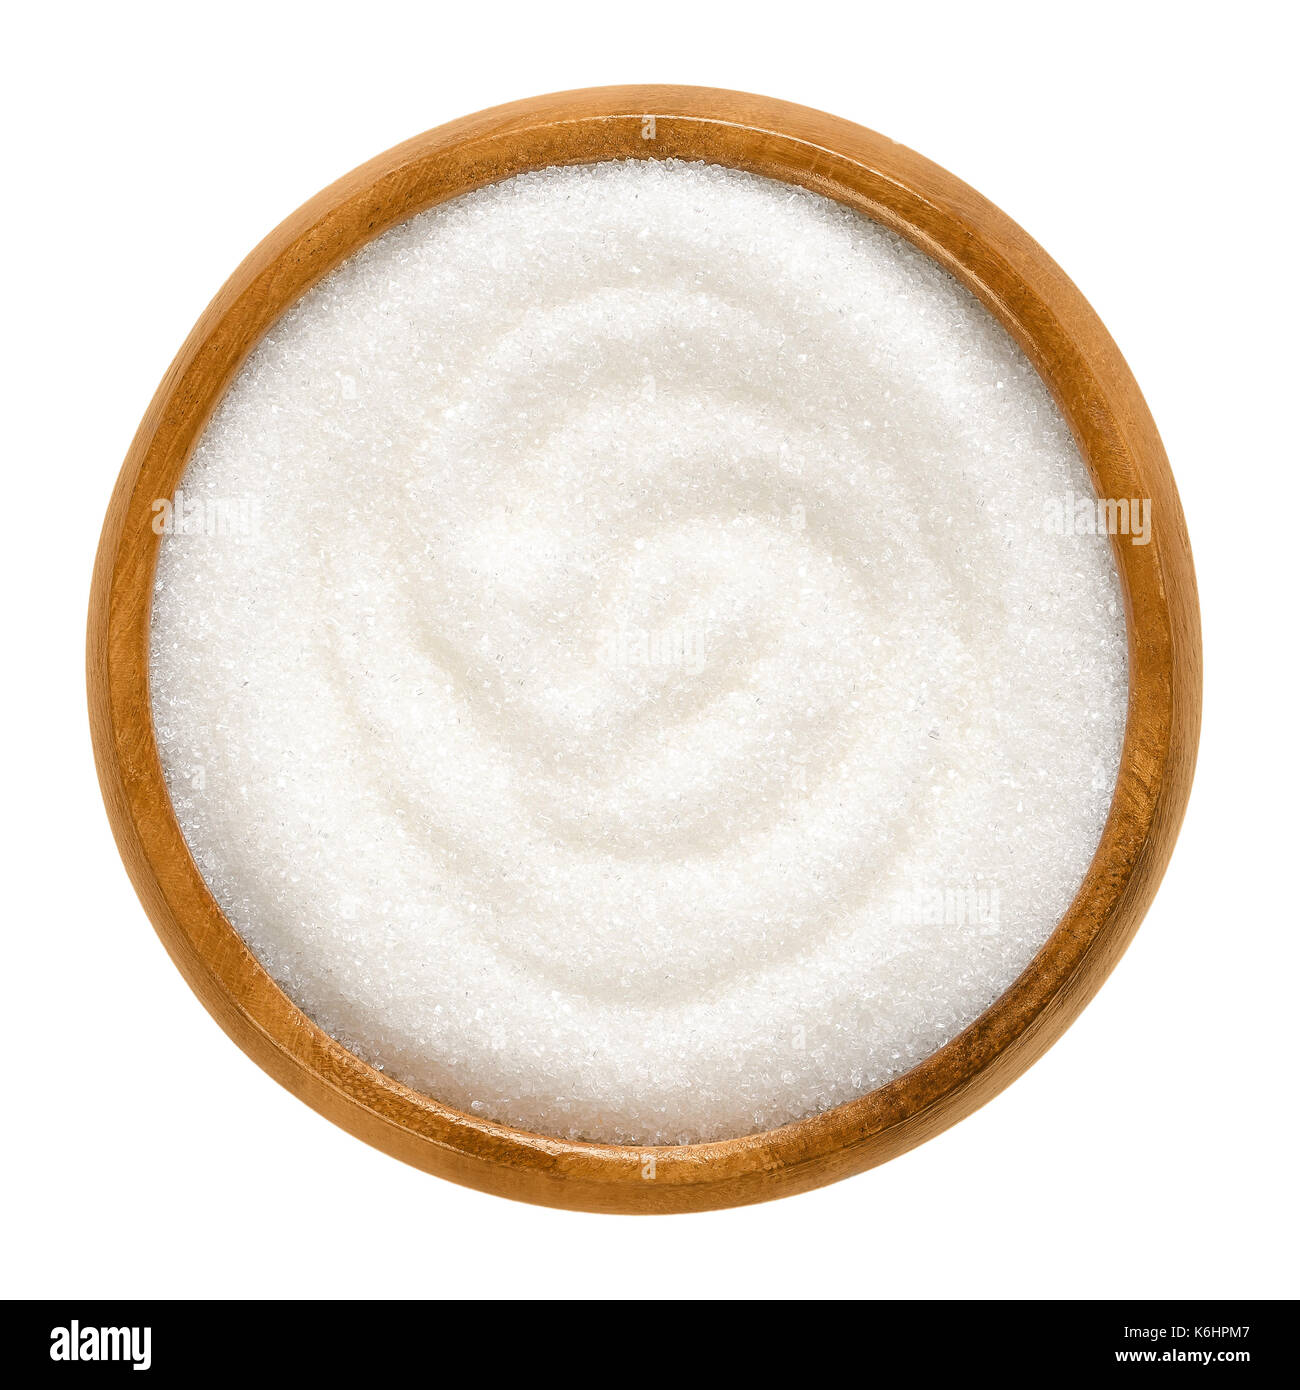 Fein granulierten Zucker in Houten. Kristalle von raffiniertem Zucker. Süße löslichen Kohlenhydrate. Saccharose. Makro Foto. Stockfoto